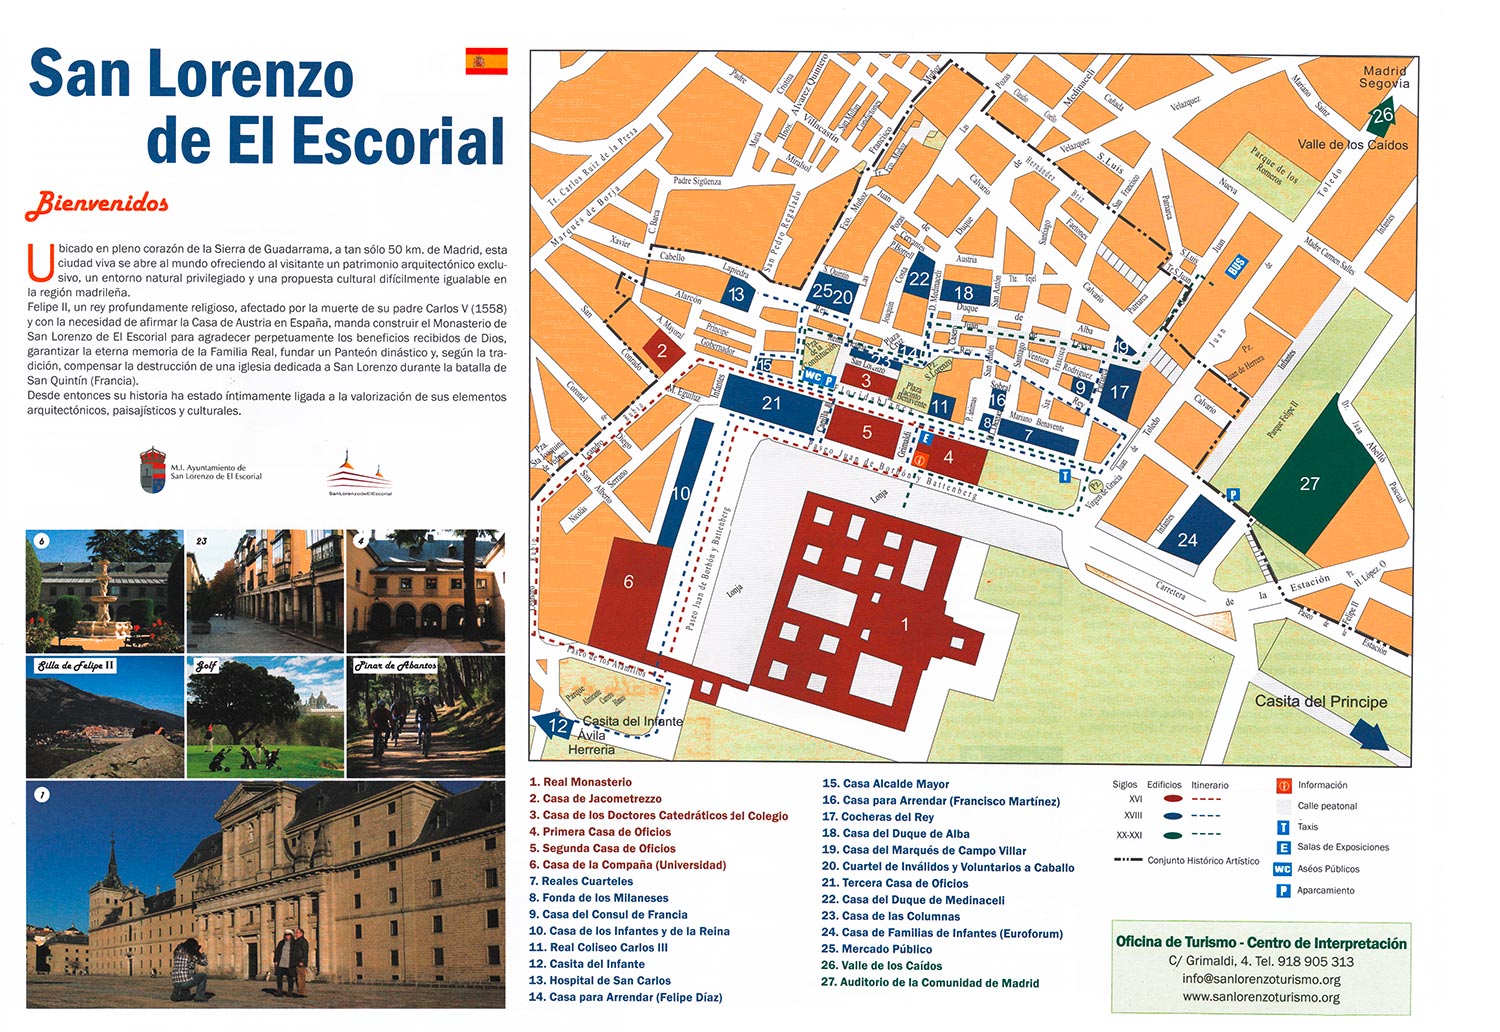 /assets/contentimages/Real_Sitio_de_San_Lorenzo_de_El_Escorial_bei_El_Escorial~0.jpg